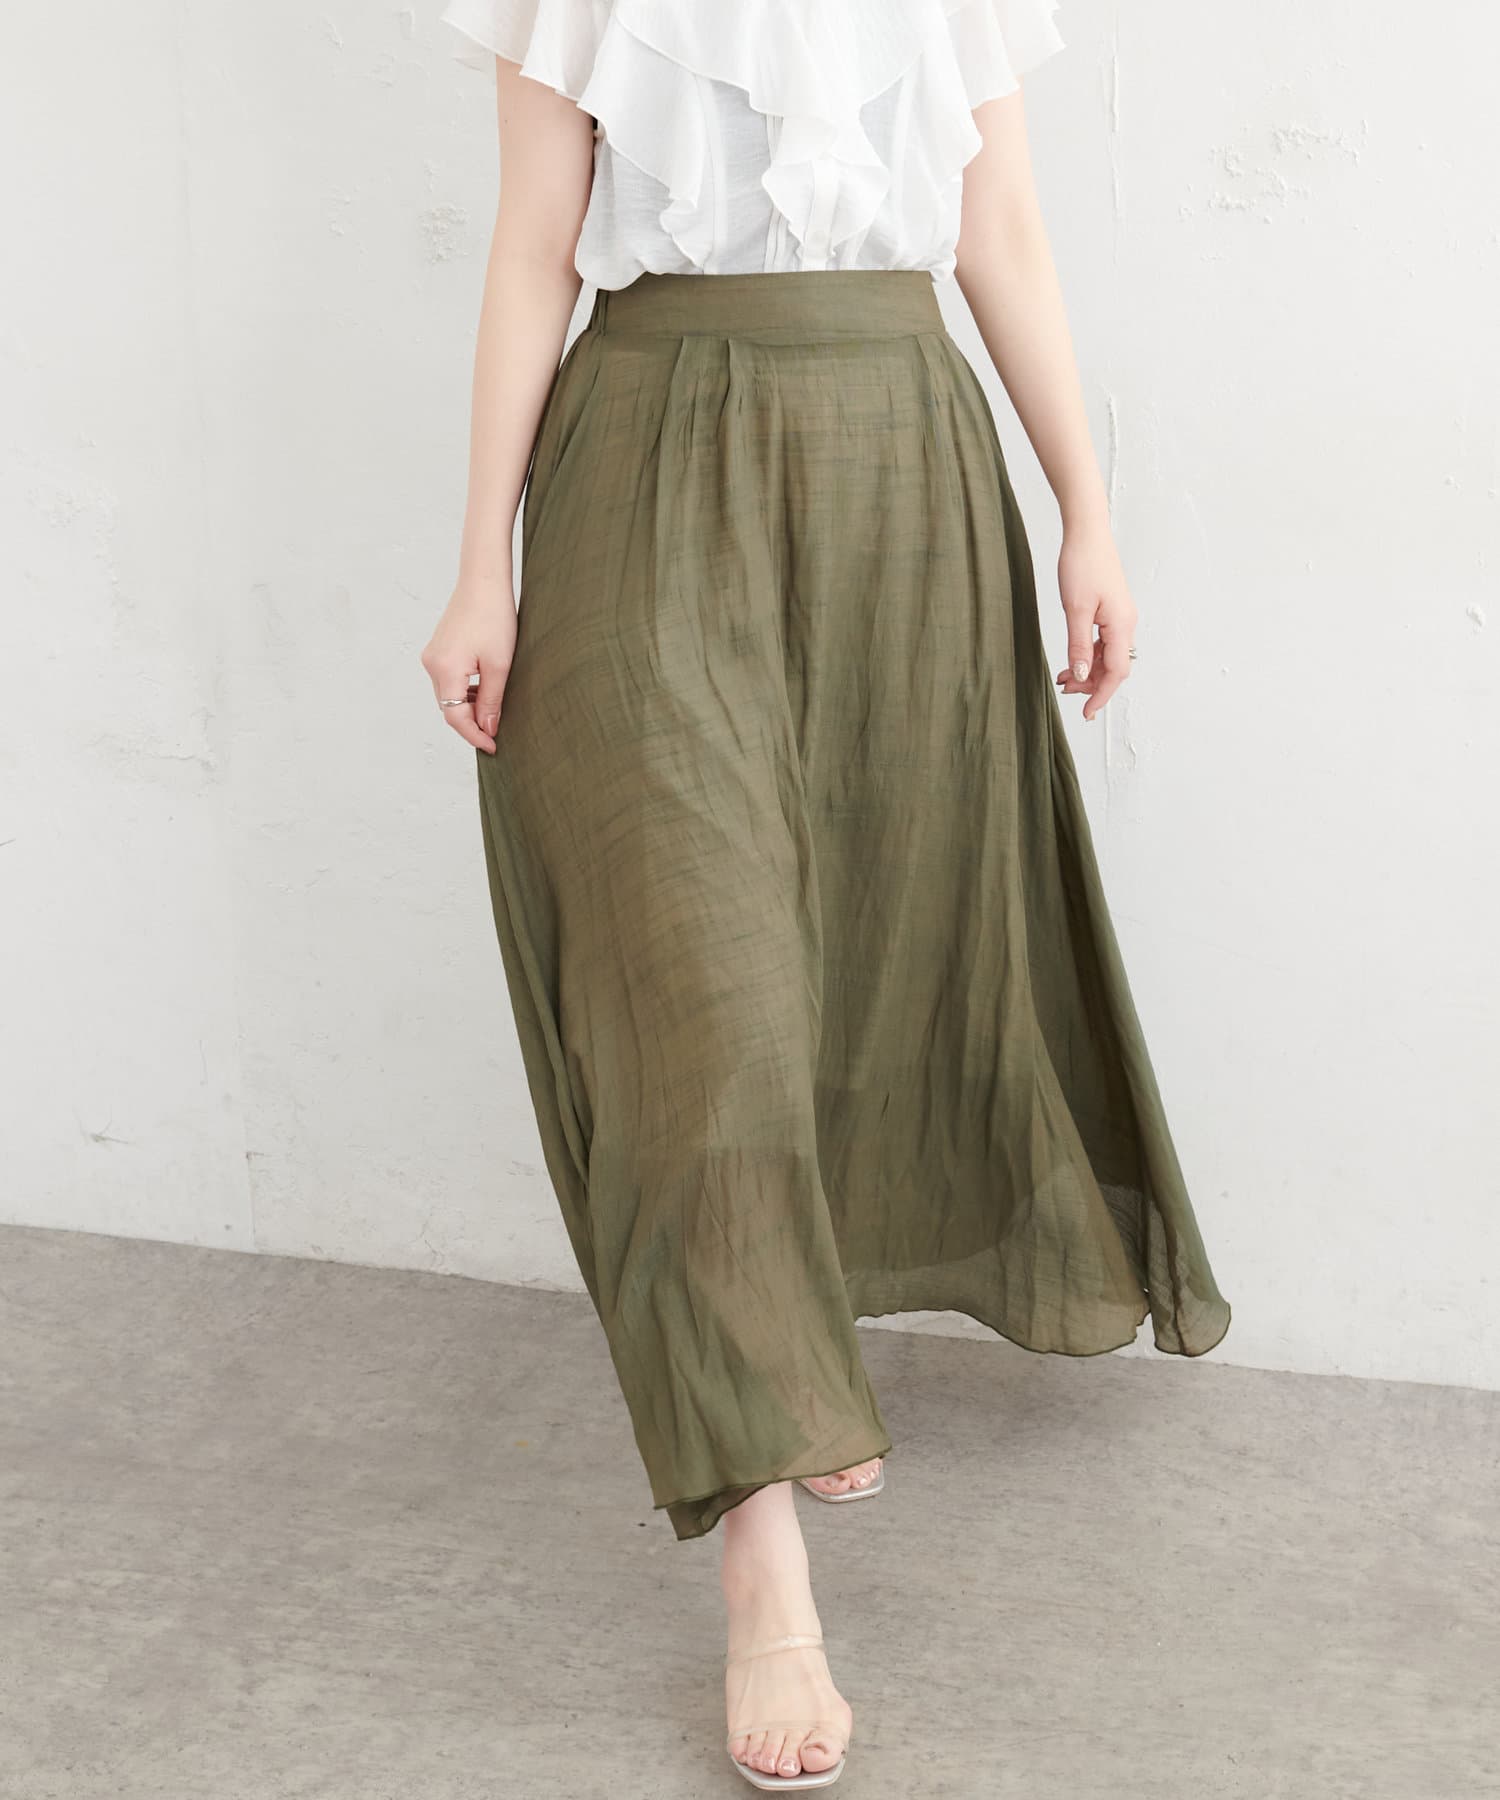 natural couture(ナチュラルクチュール) リネンライク涼しげスカート